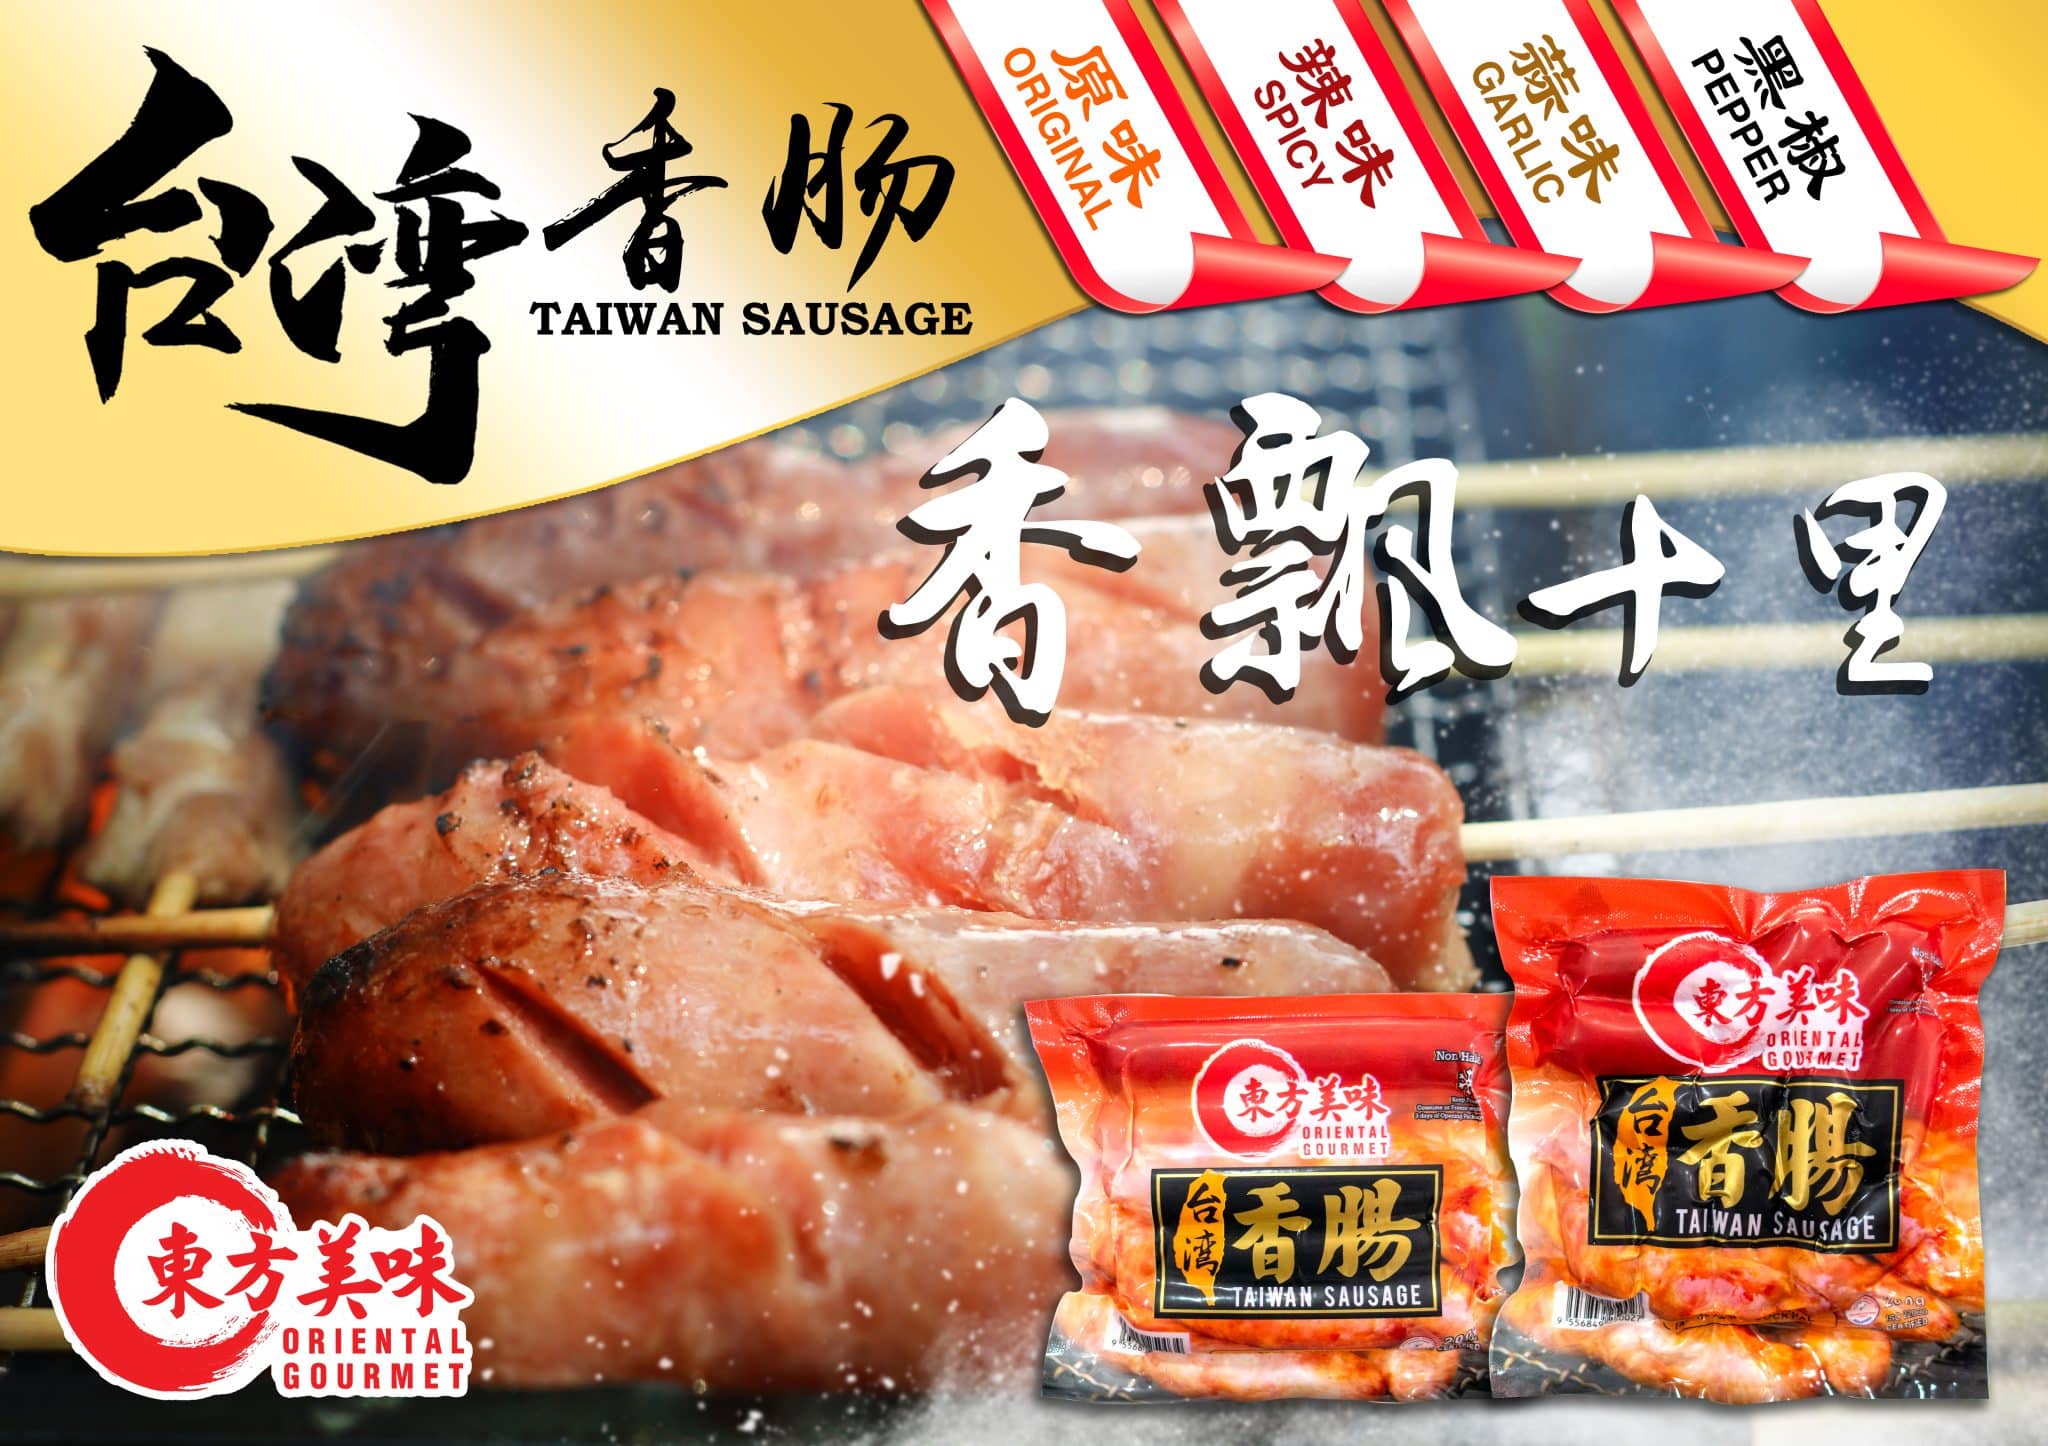 A1-taiwan sausage poster